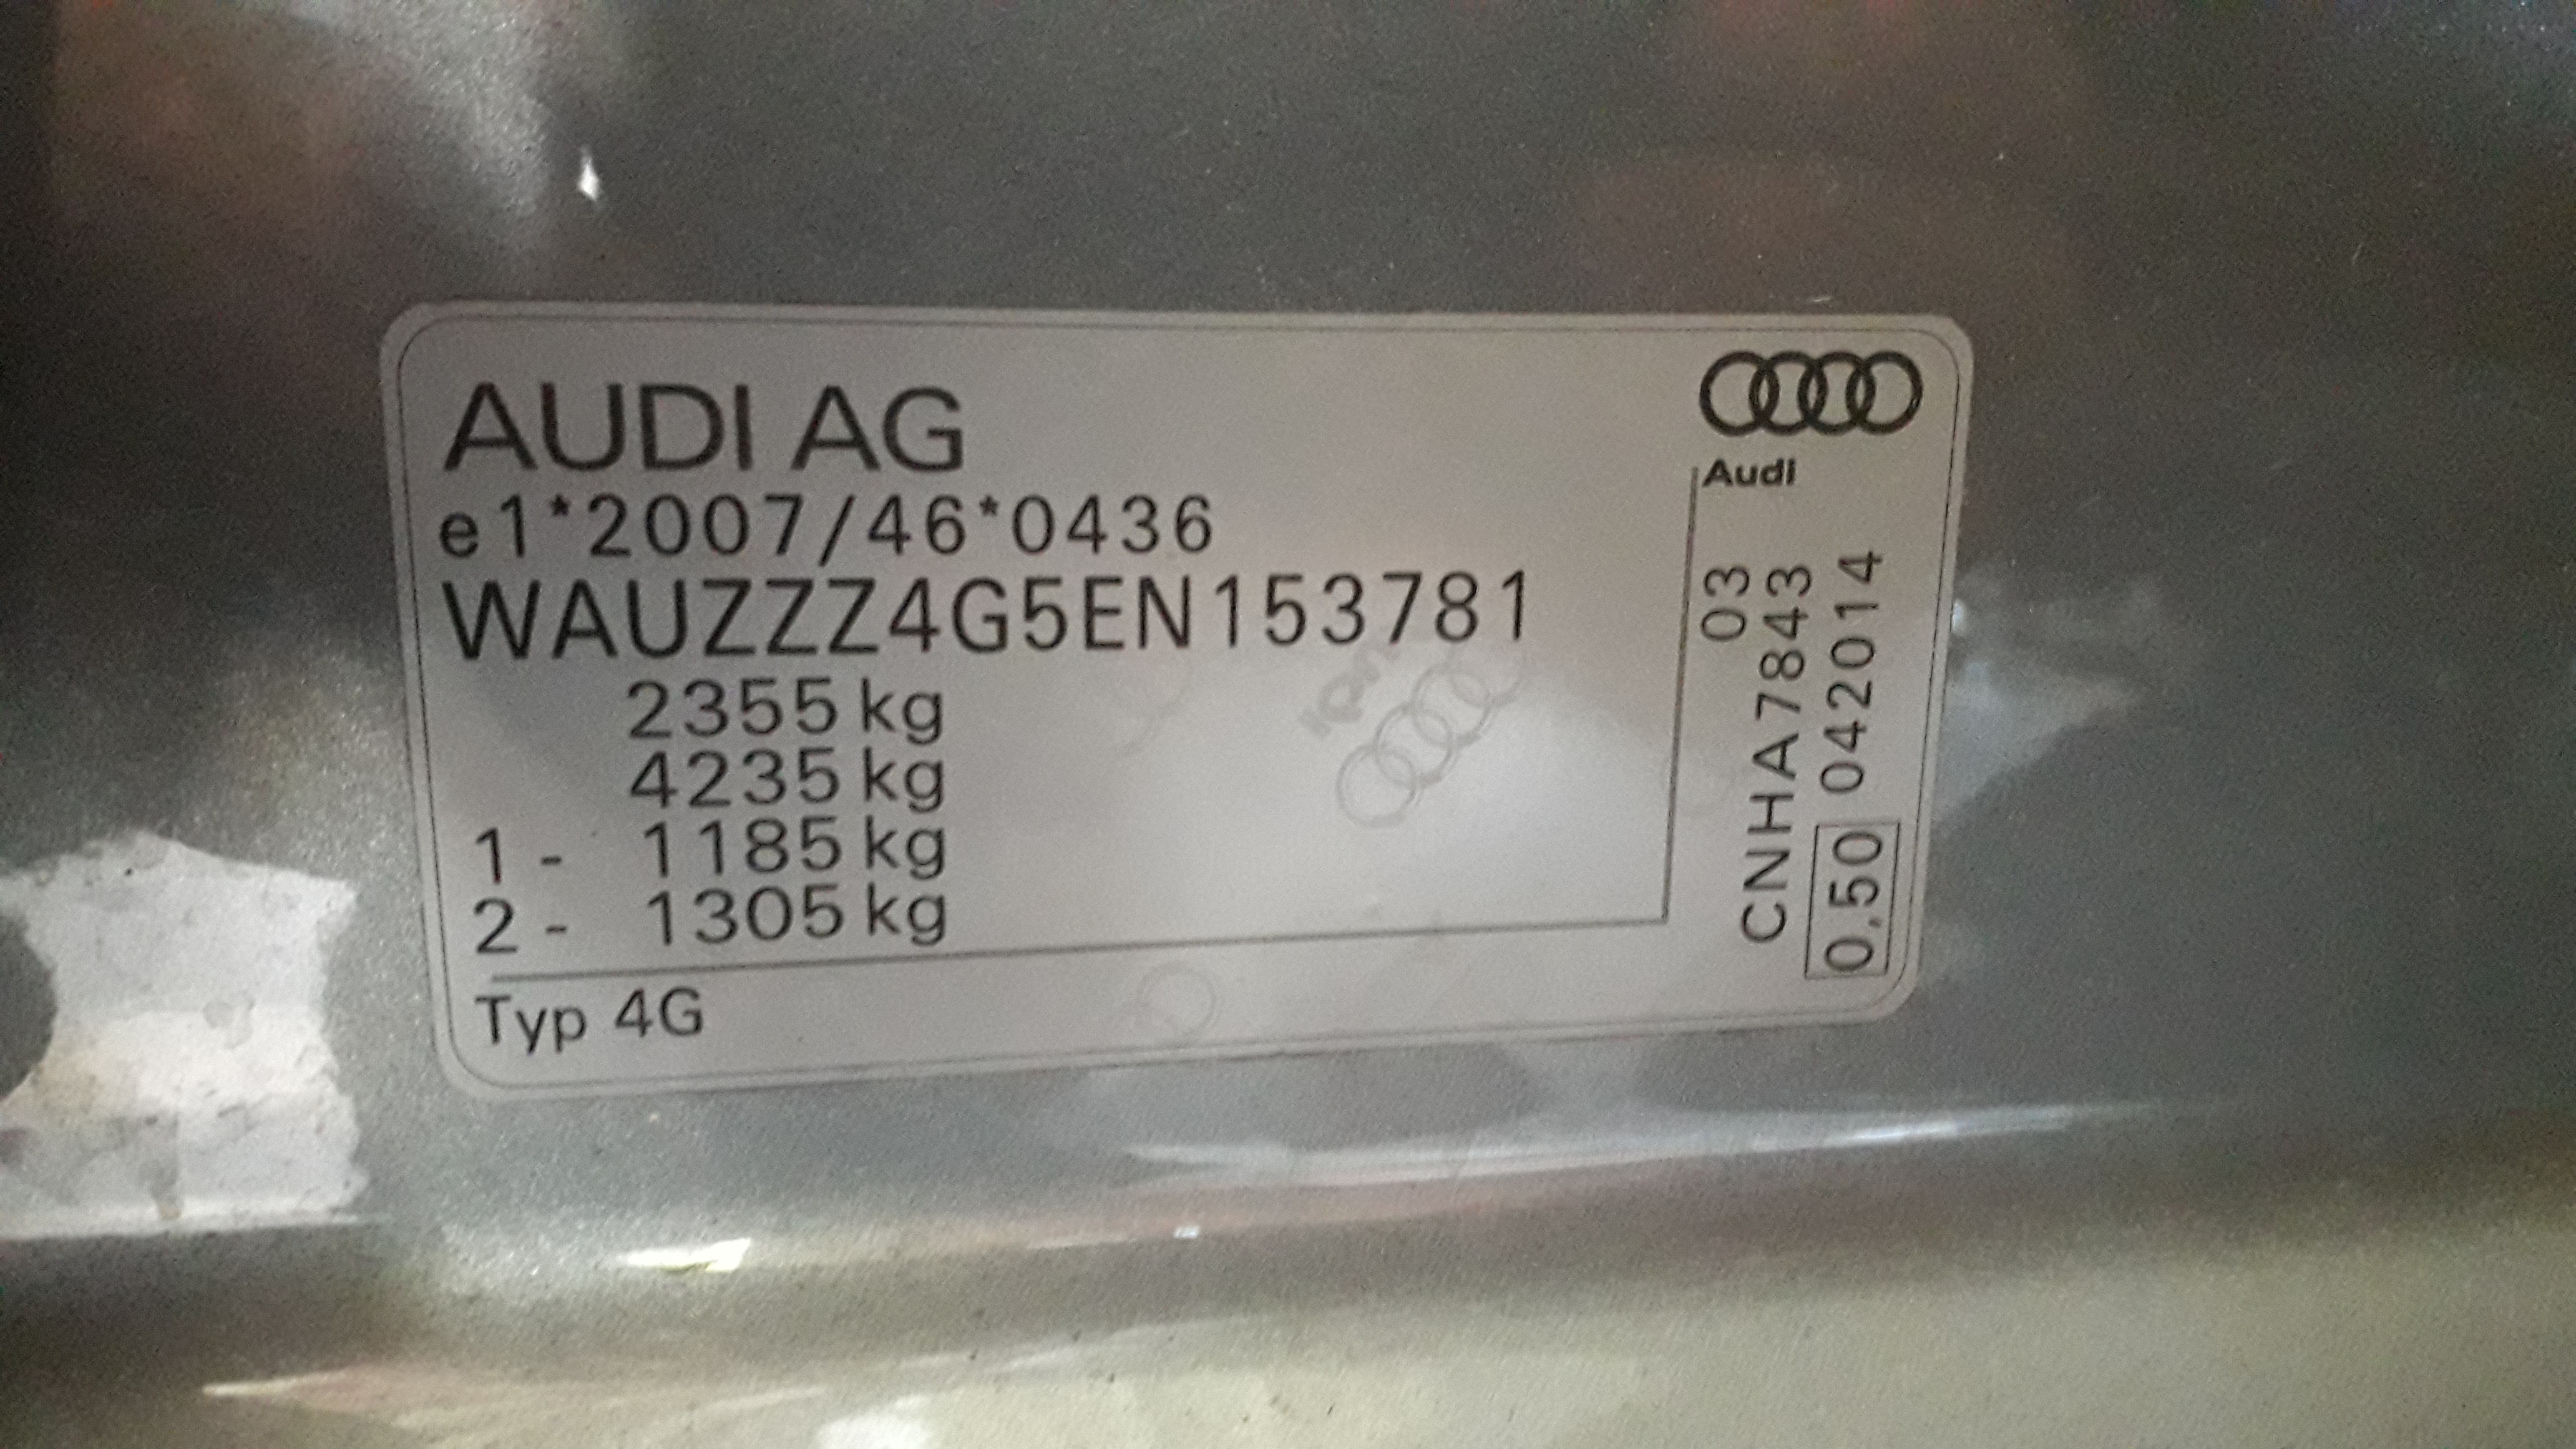 Audi C7 Wymiana oleju w skrzyni biegów elektroda.pl